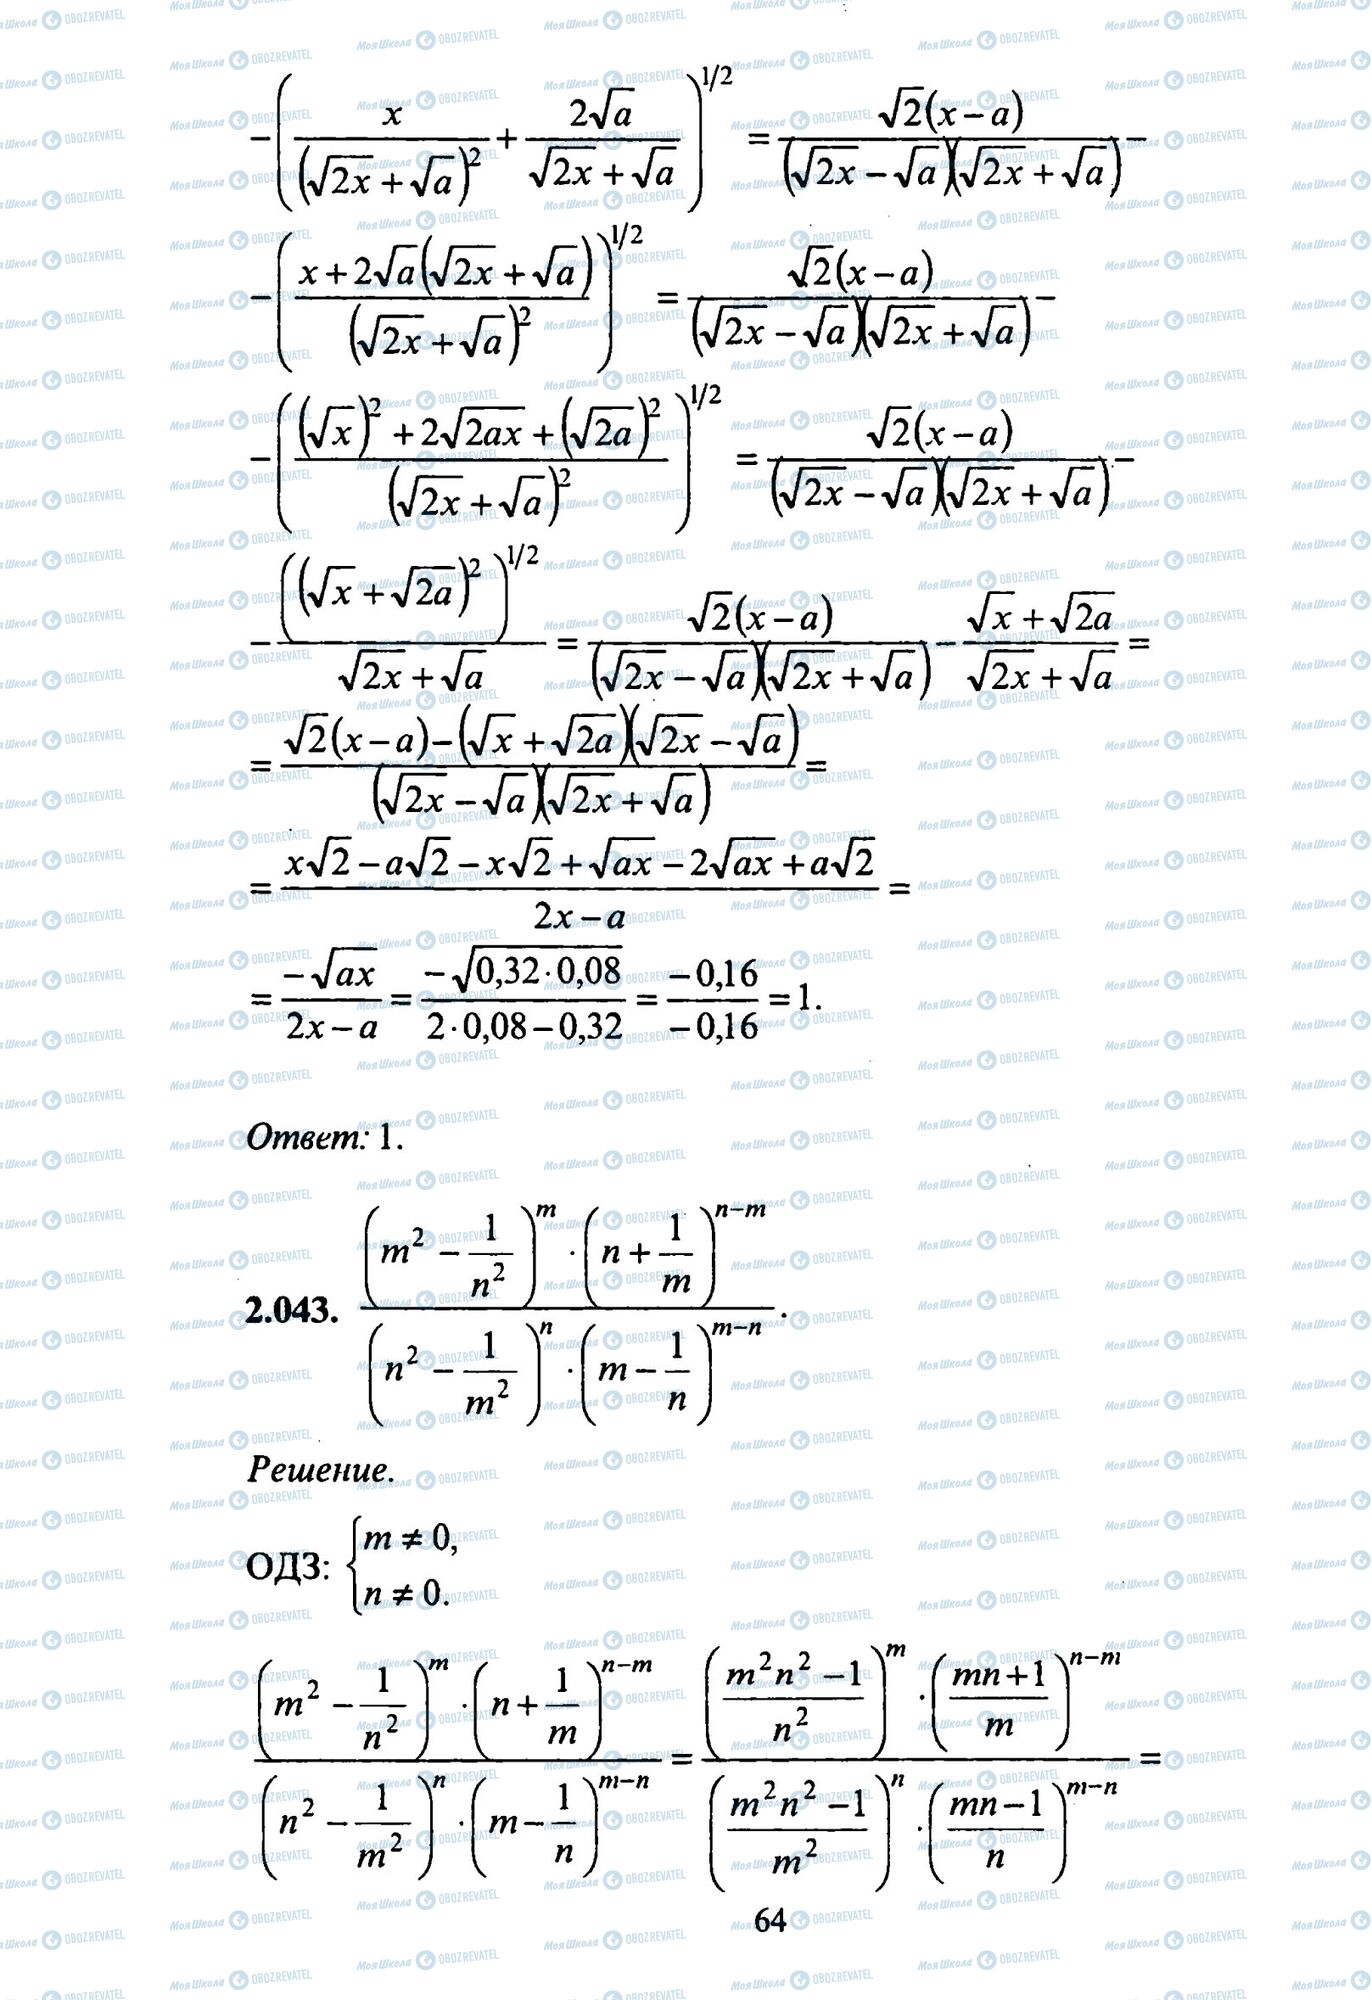 ЗНО Математика 11 клас сторінка 43